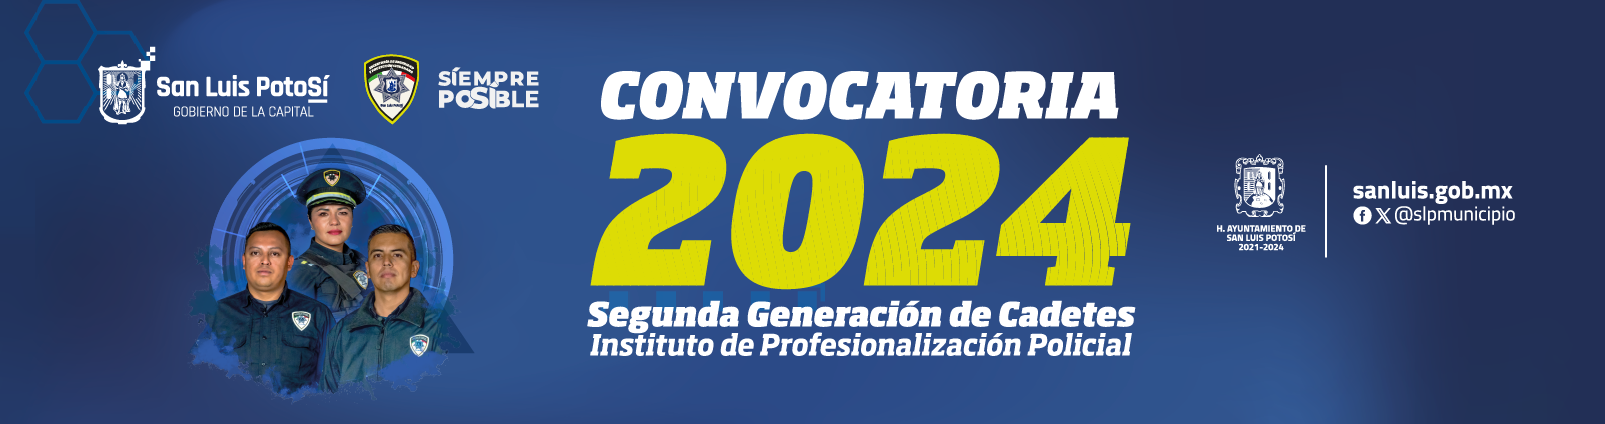 Convocatoria de reclutamiento 2022